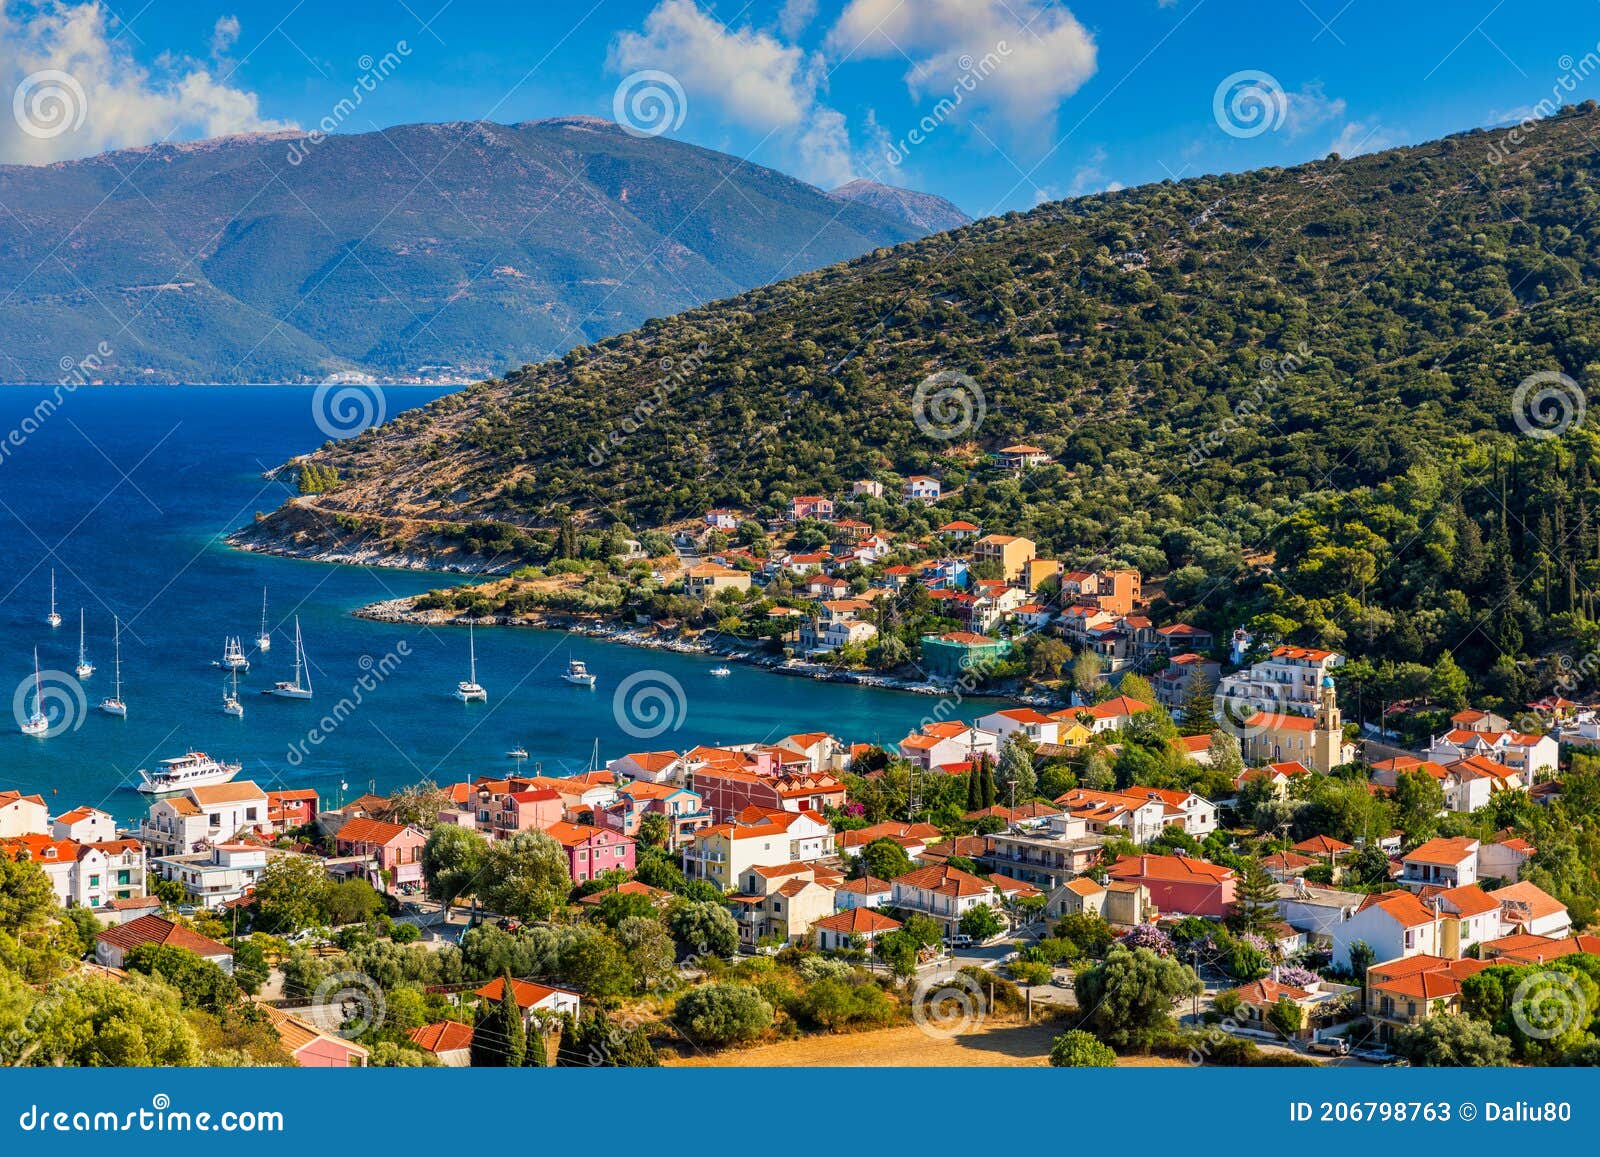 agia effimia village on cephalonia or kefalonia island, ionian sea, greece. amazing cityscape of agia effimia town, kefalonia,